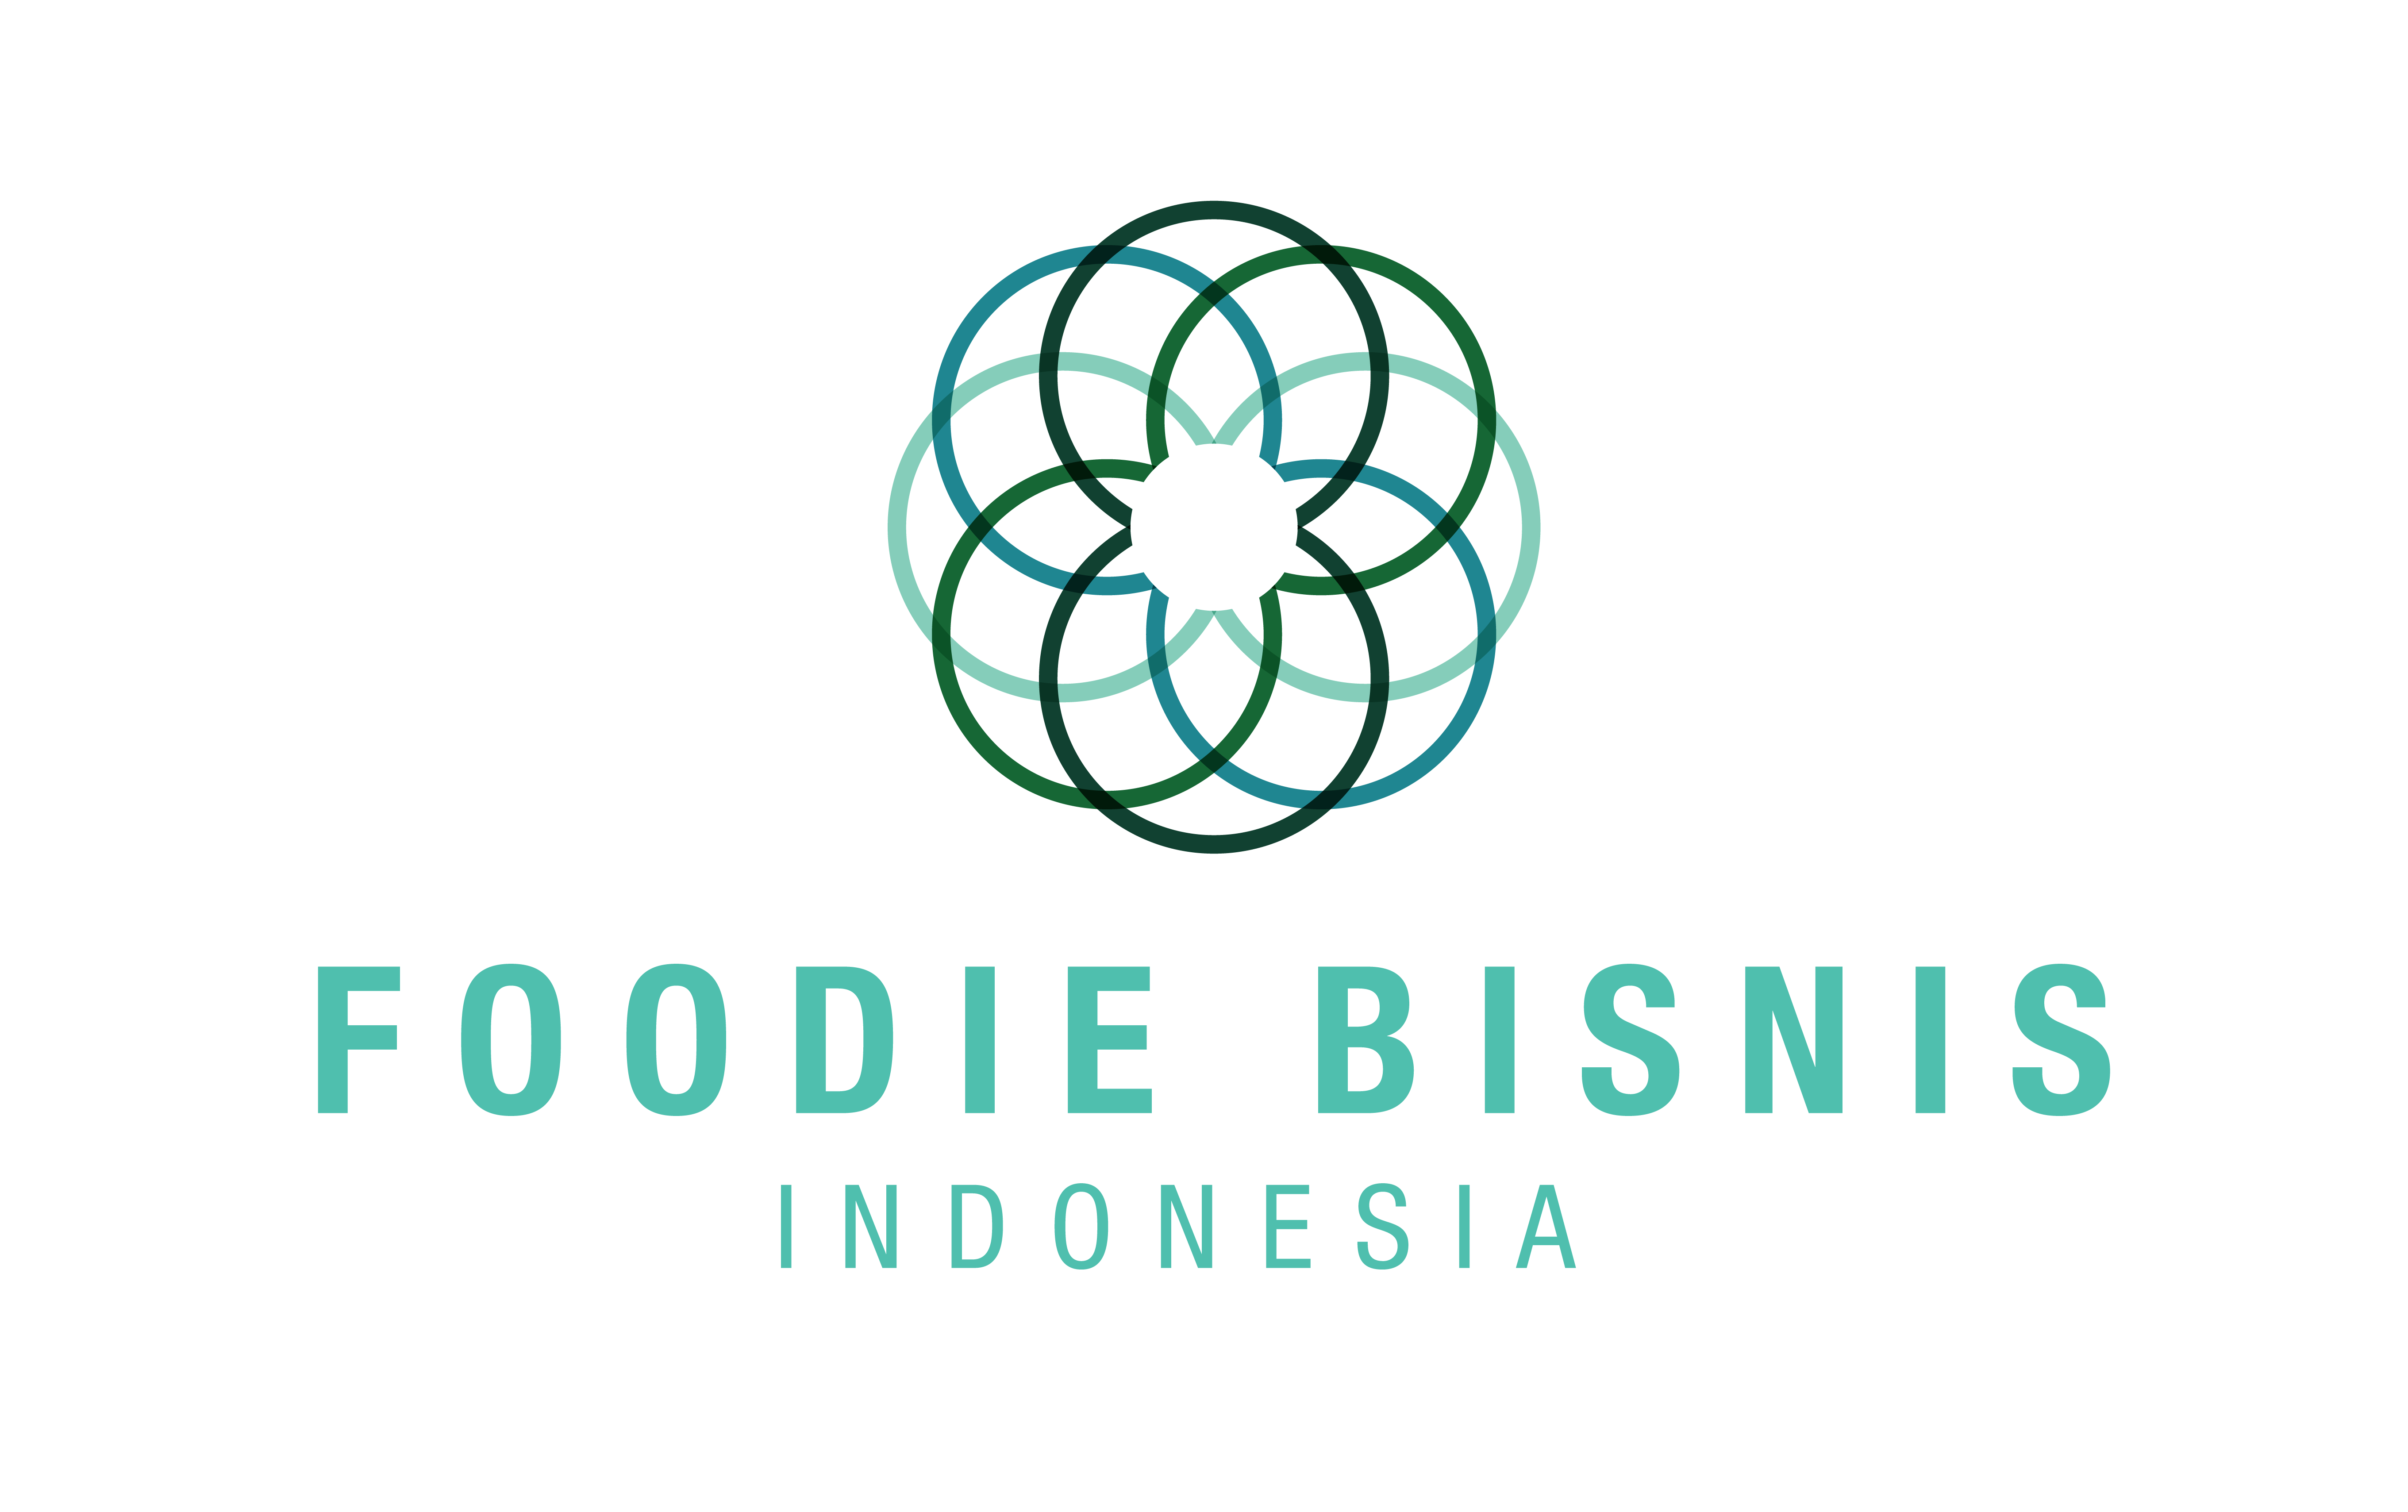 Foodie Bisnis Indonesia